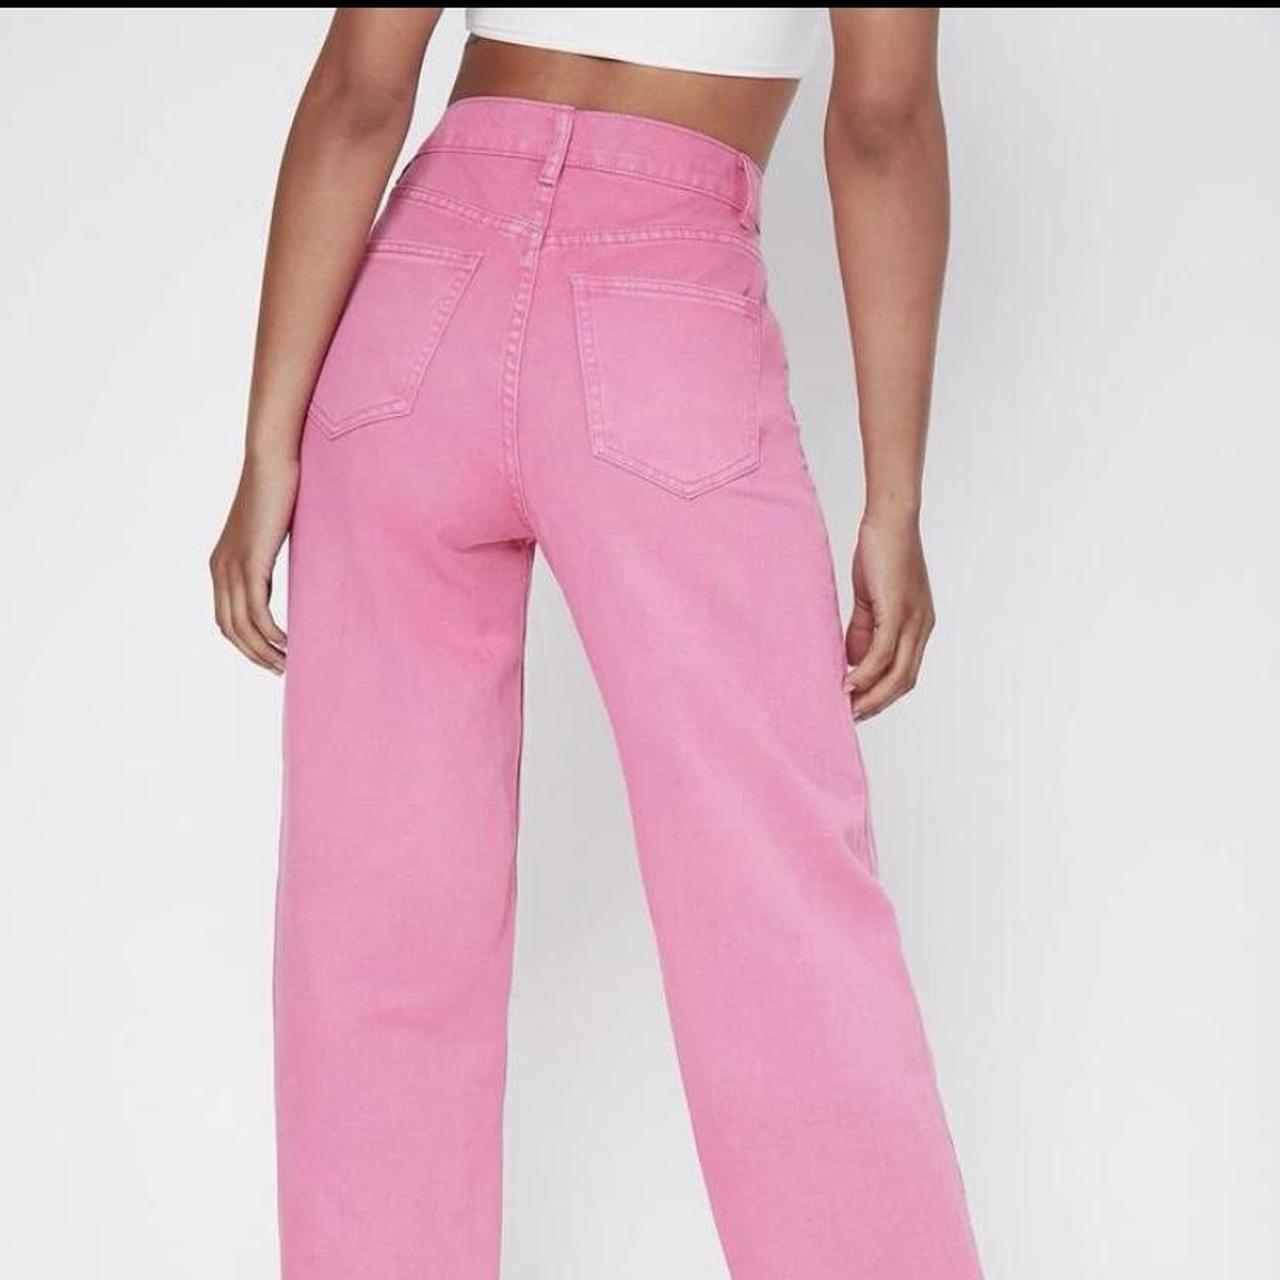 shein pink high waisted jeans super flattering! i... - Depop